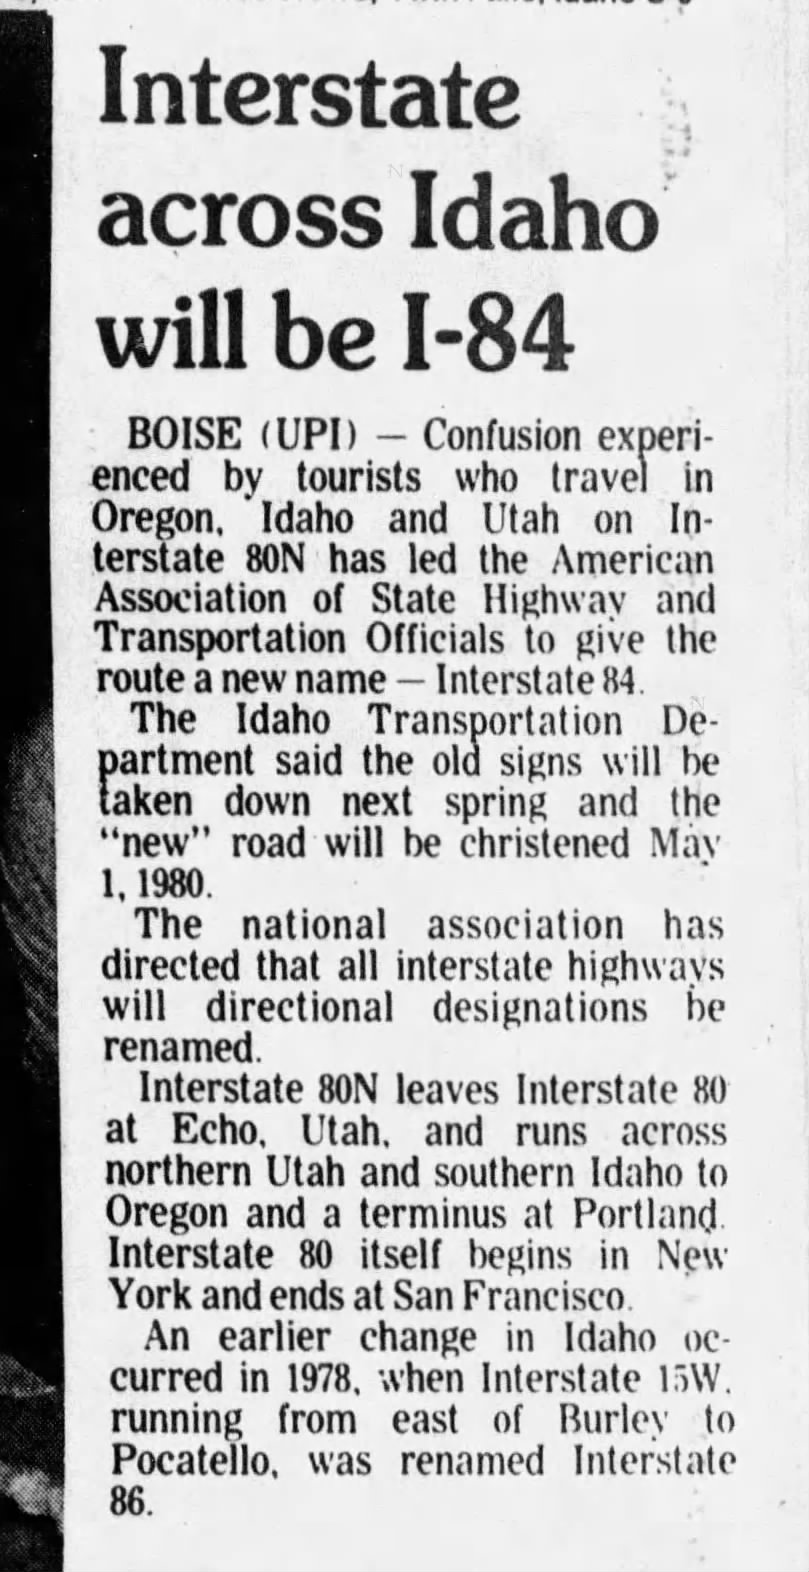 Interstate across Idaho will be I-84